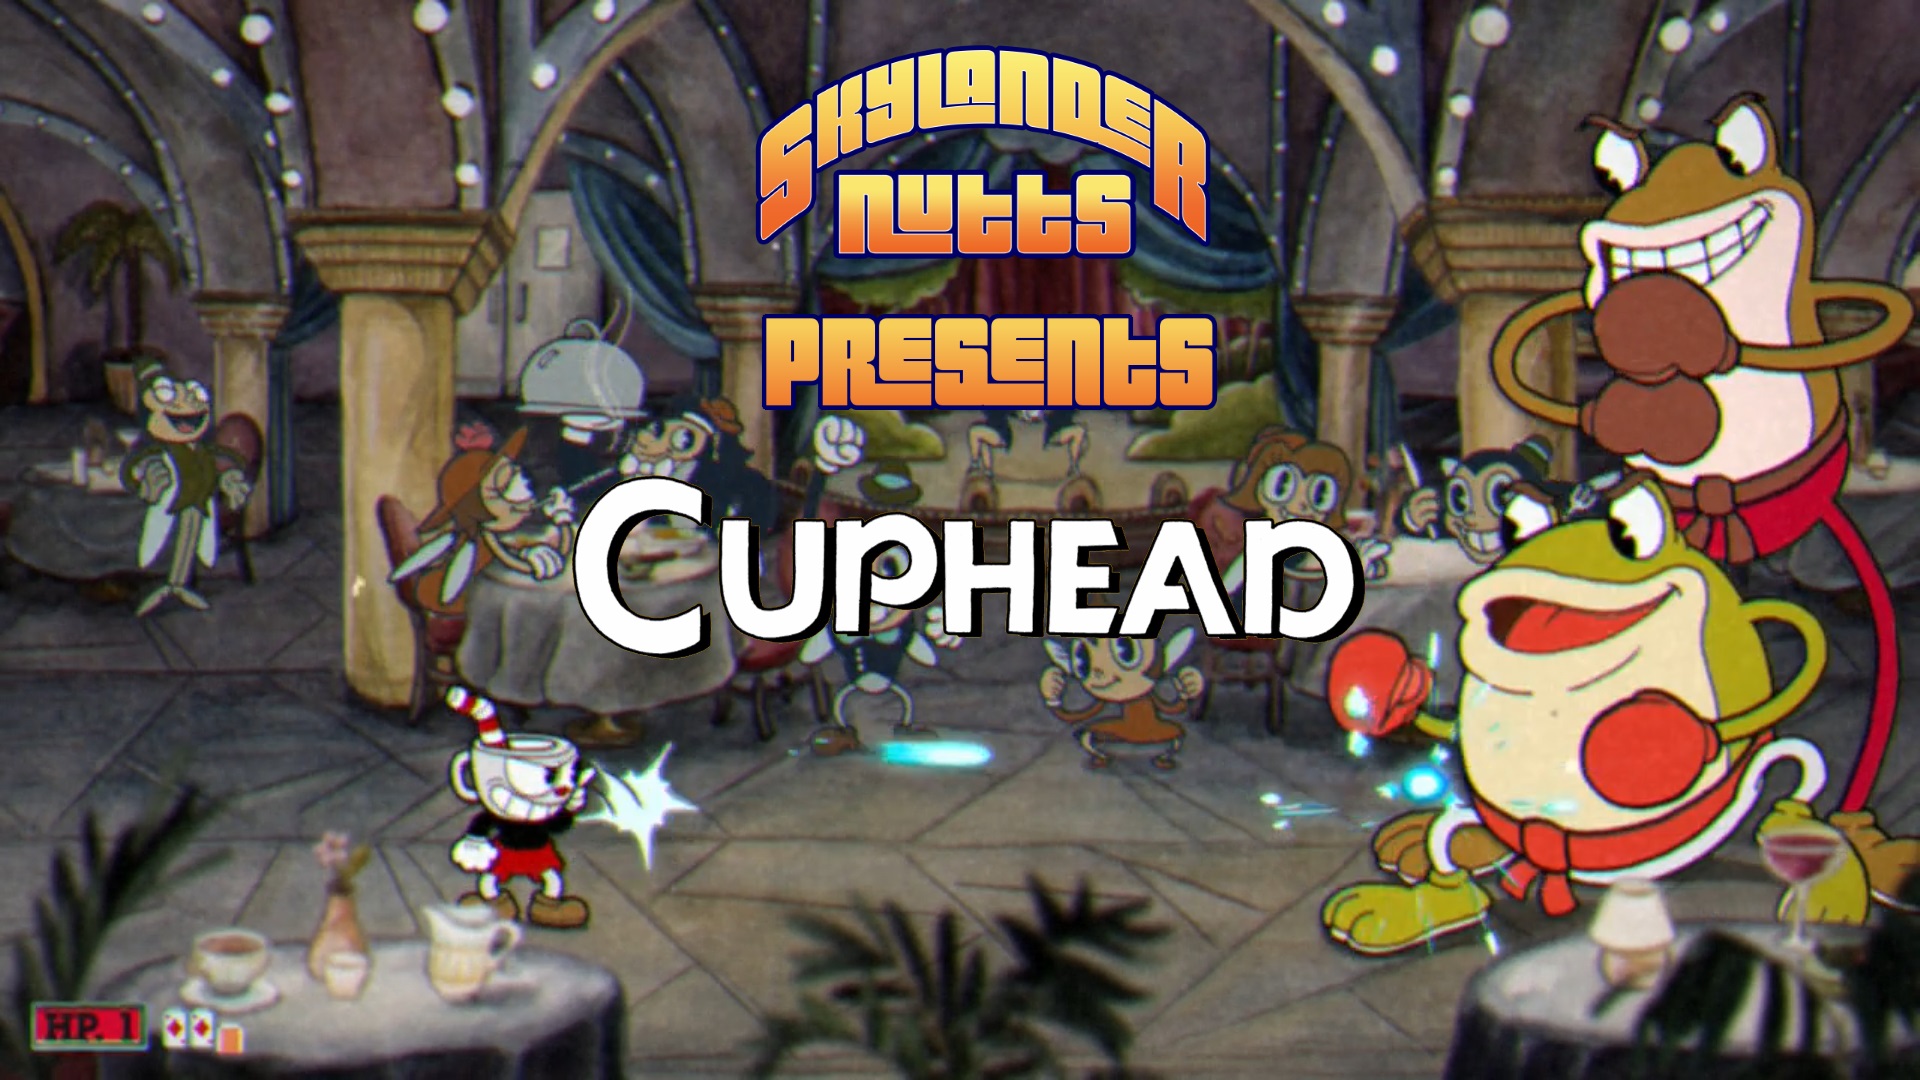 SkylanderNutts Presents Cuphead